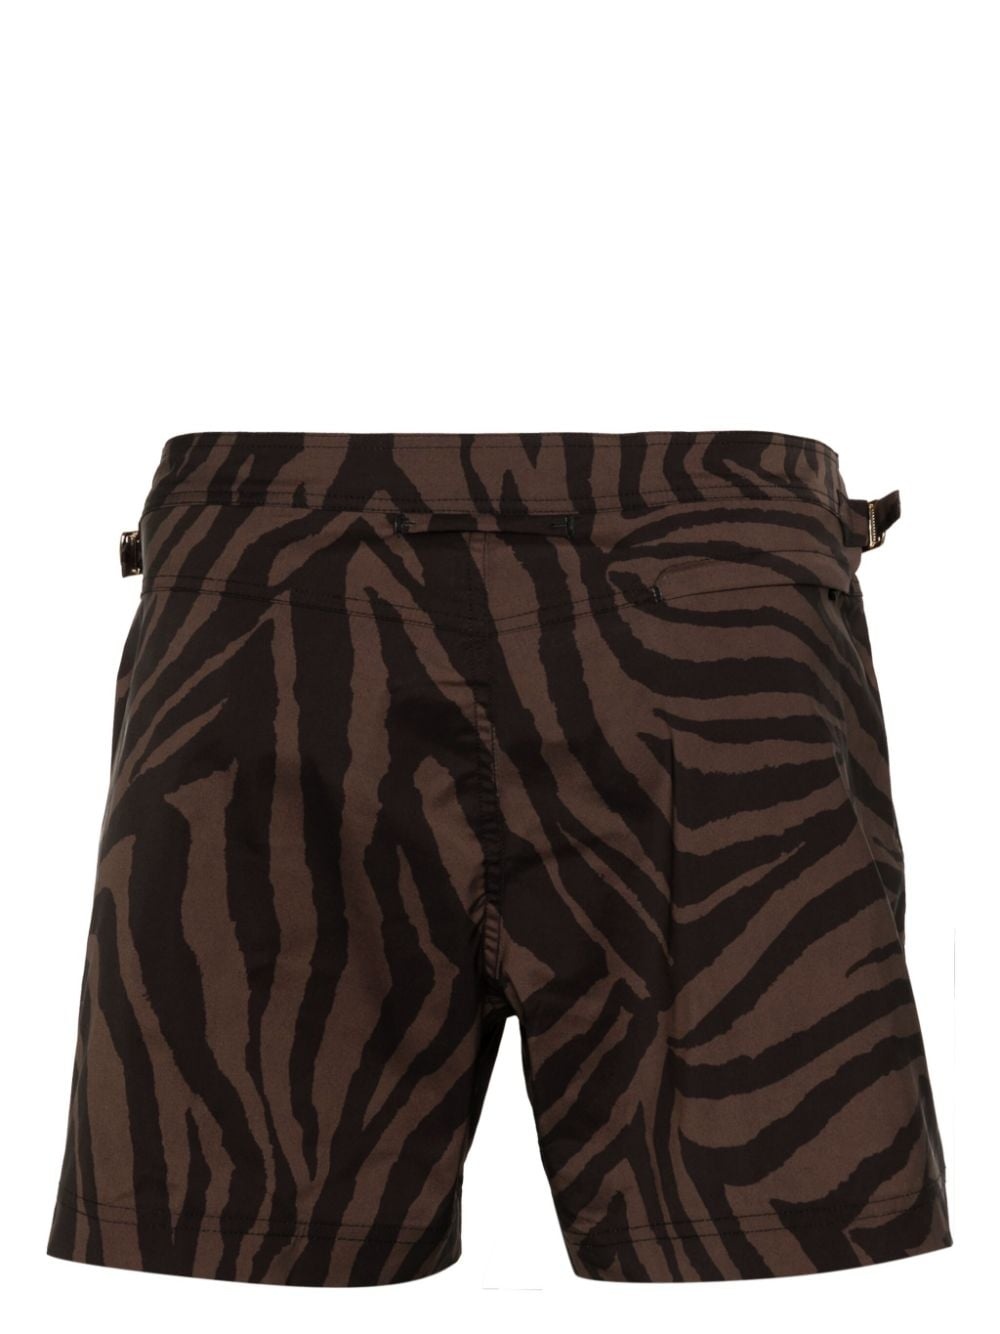 zebra-print swim shorts - 2